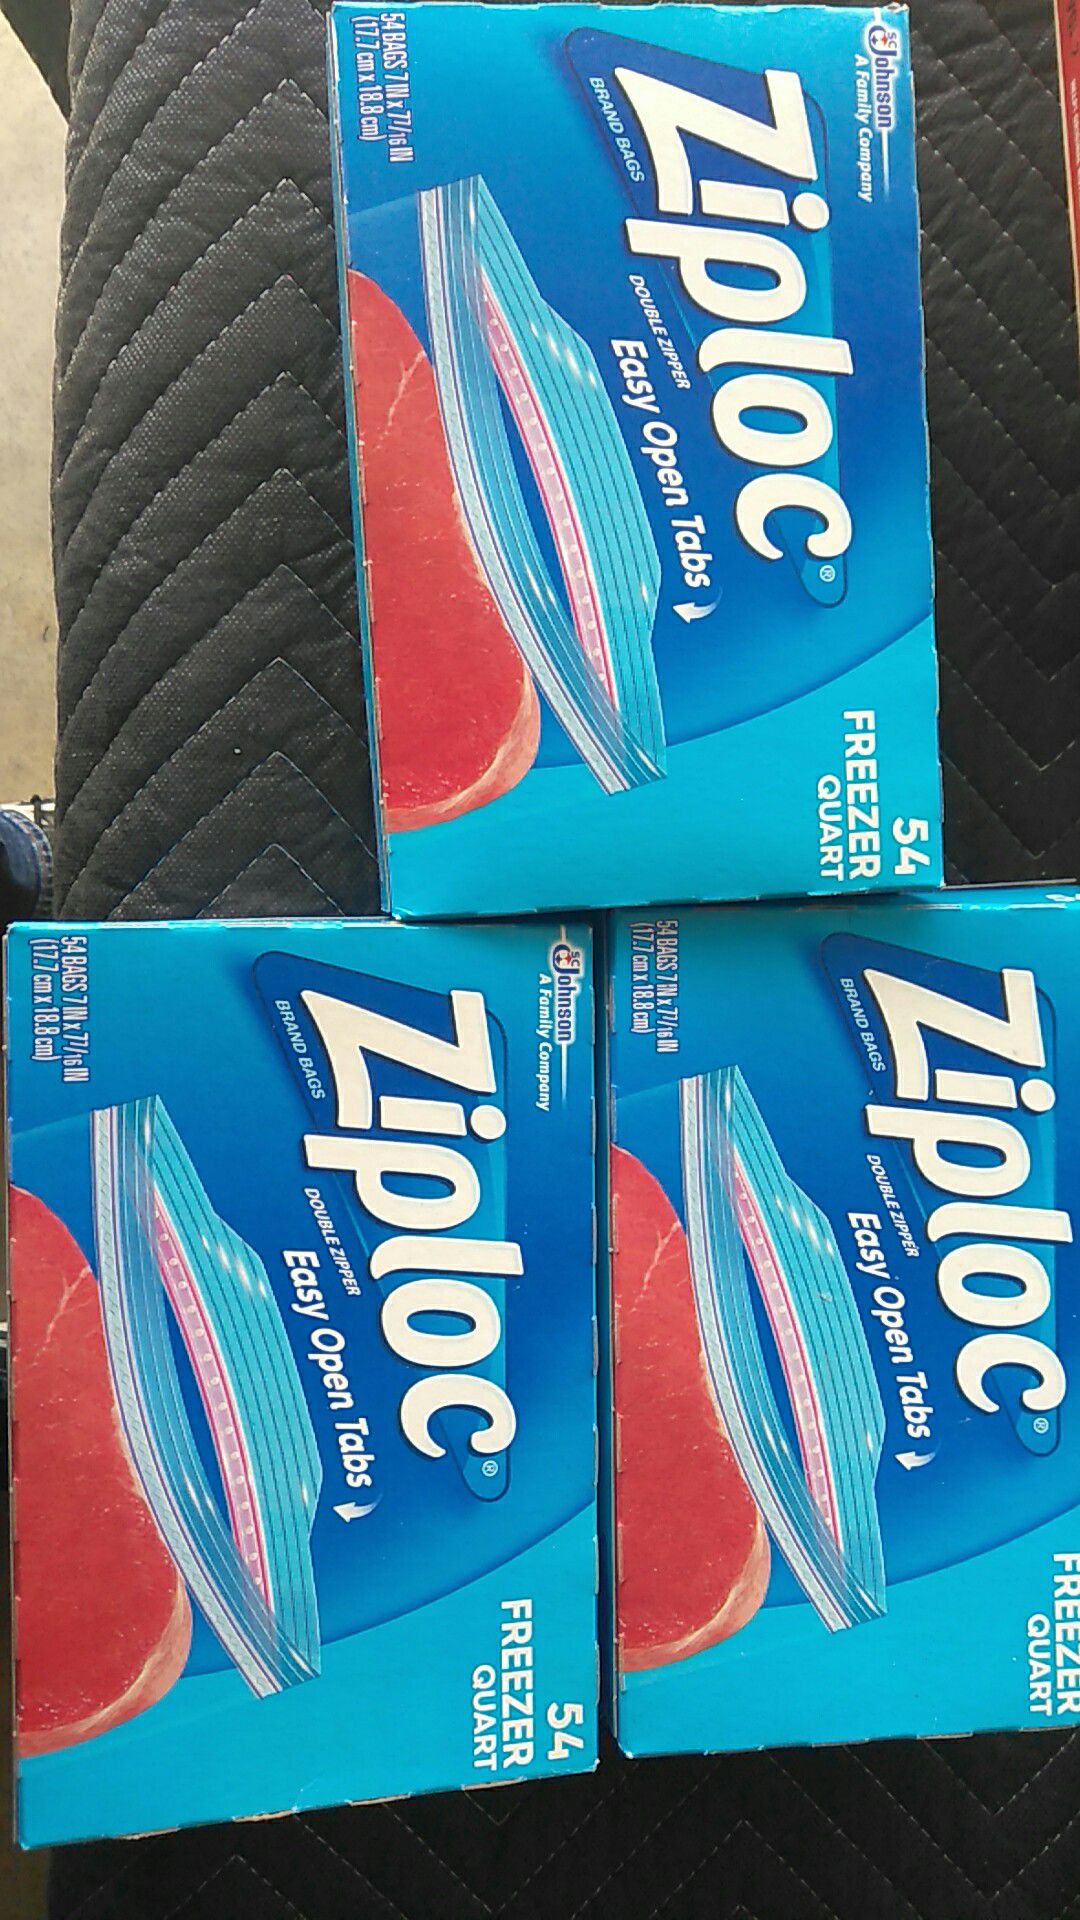 Three new boxes of Ziploc freezer 54 quart